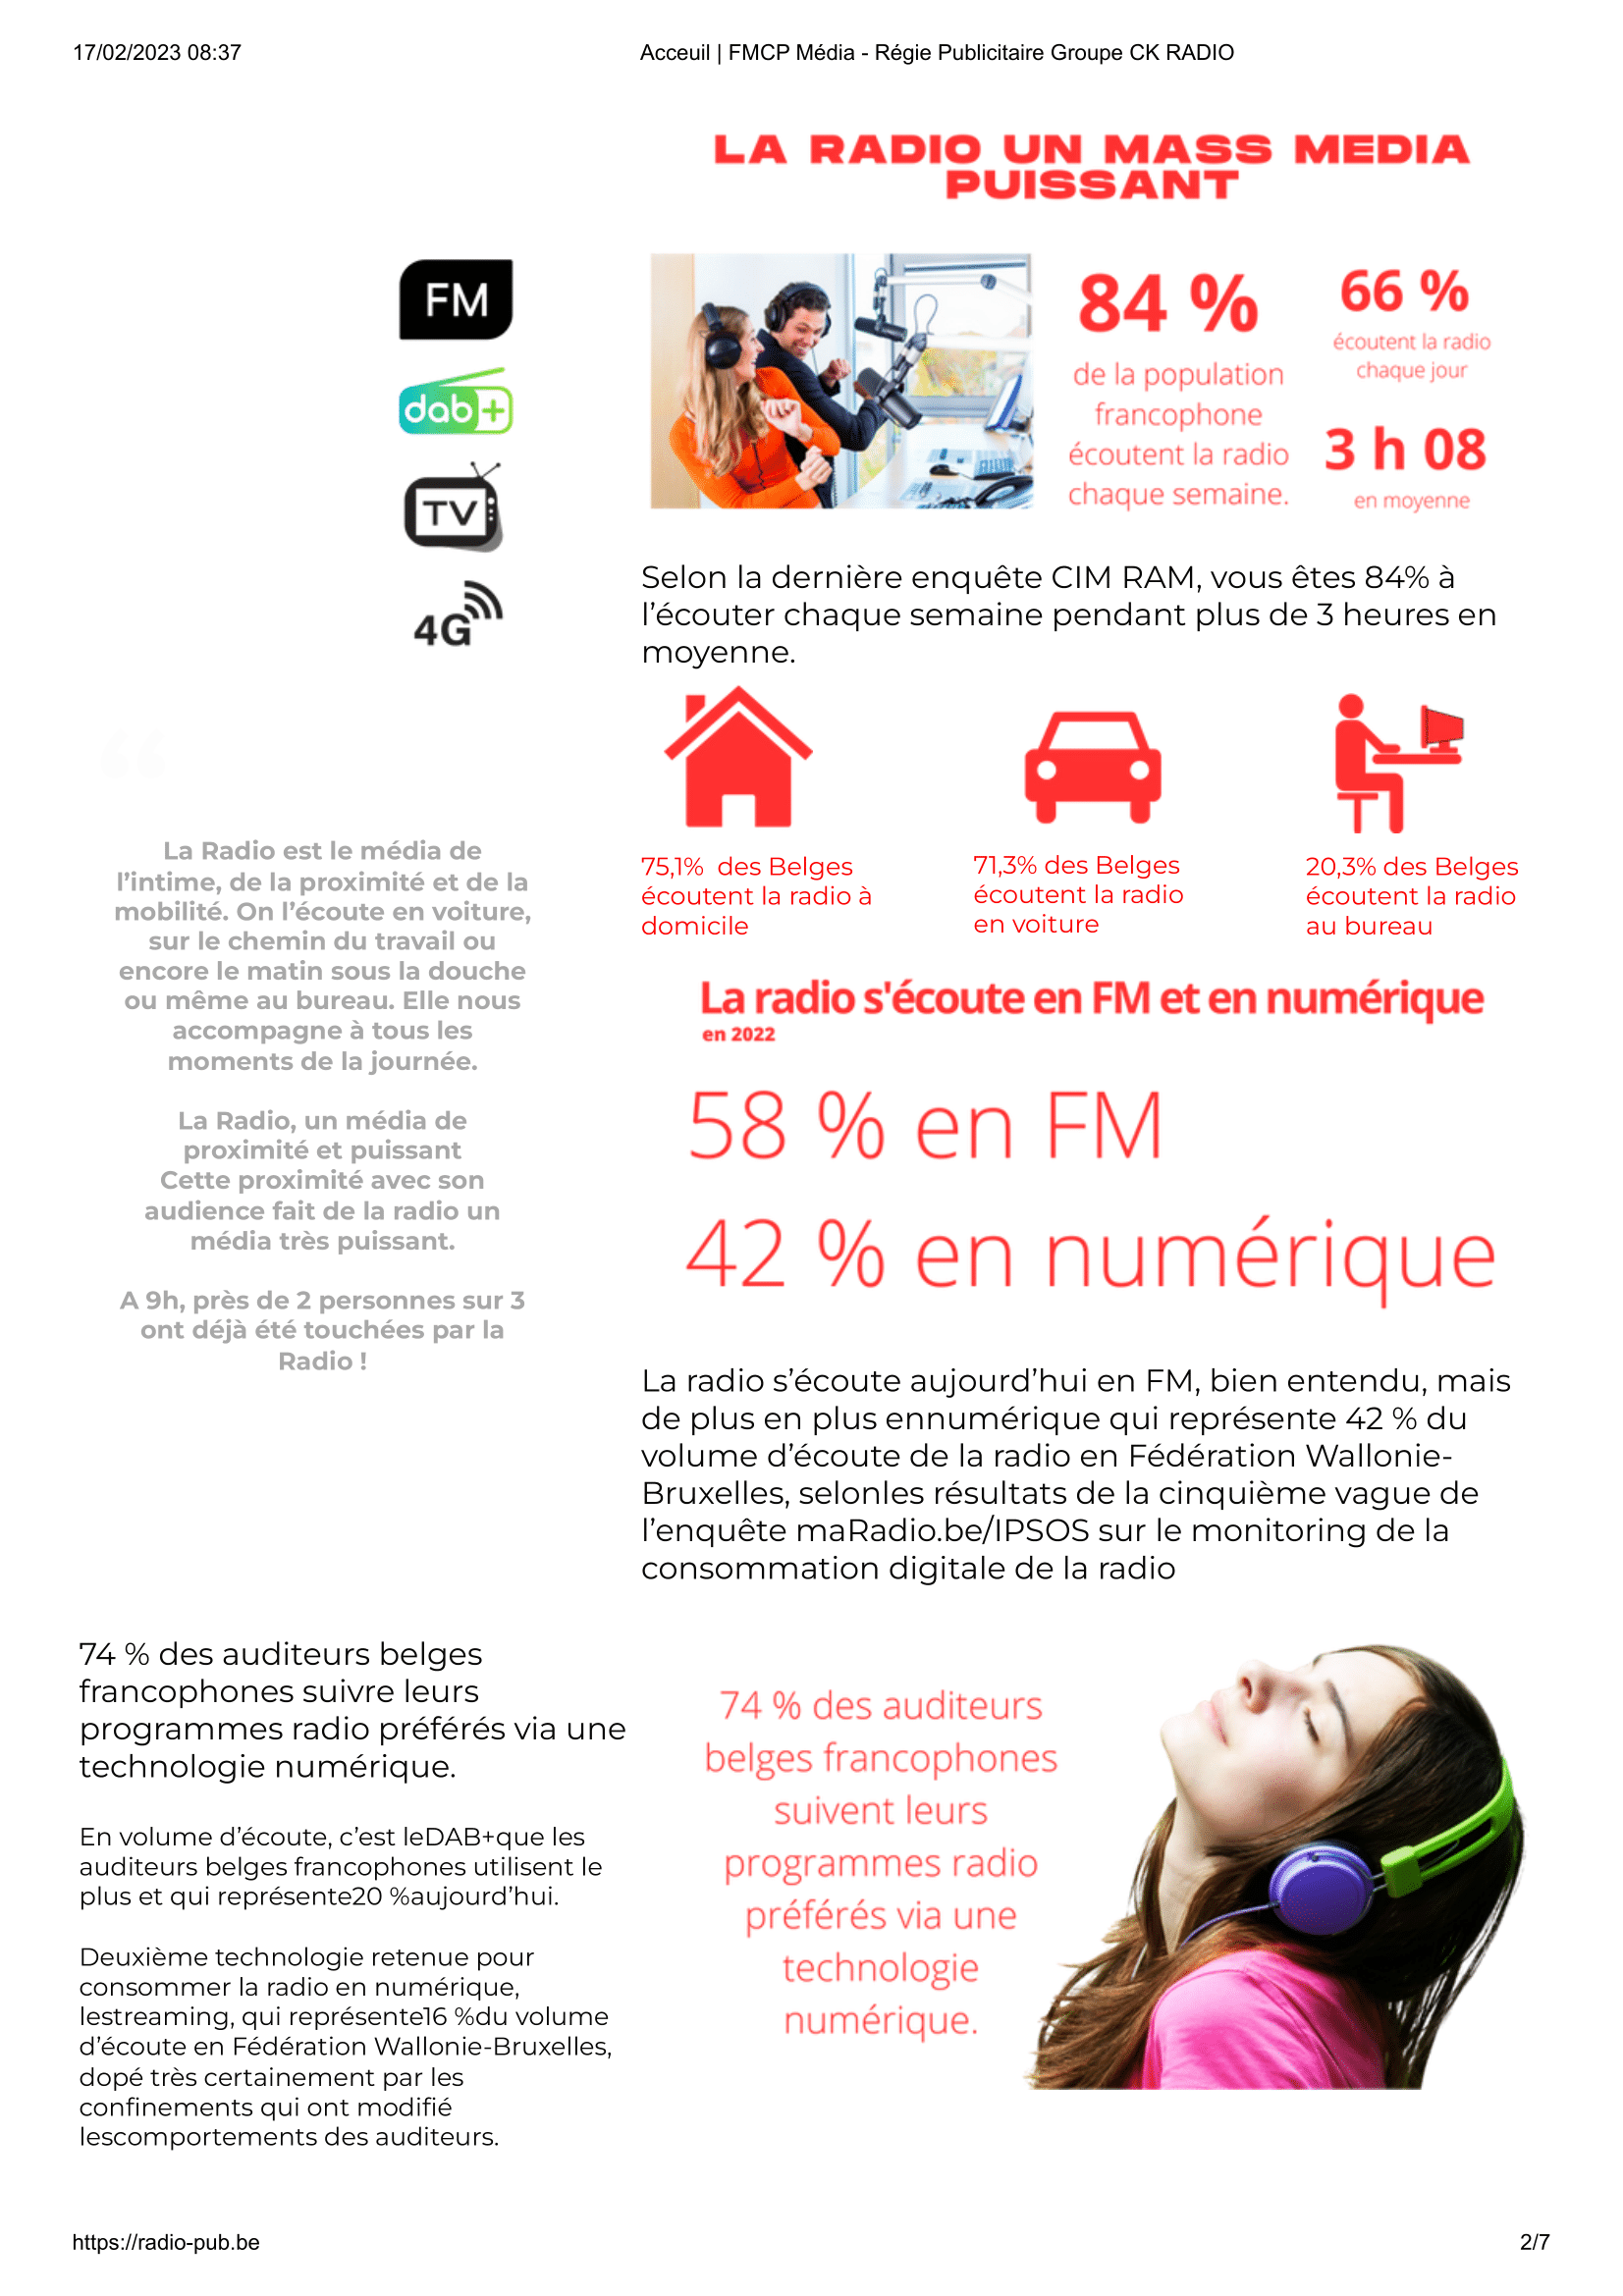 Acceuil _ FMCP Média - Régie Publicitaire Groupe CK RADIO-2.png (465 KB)